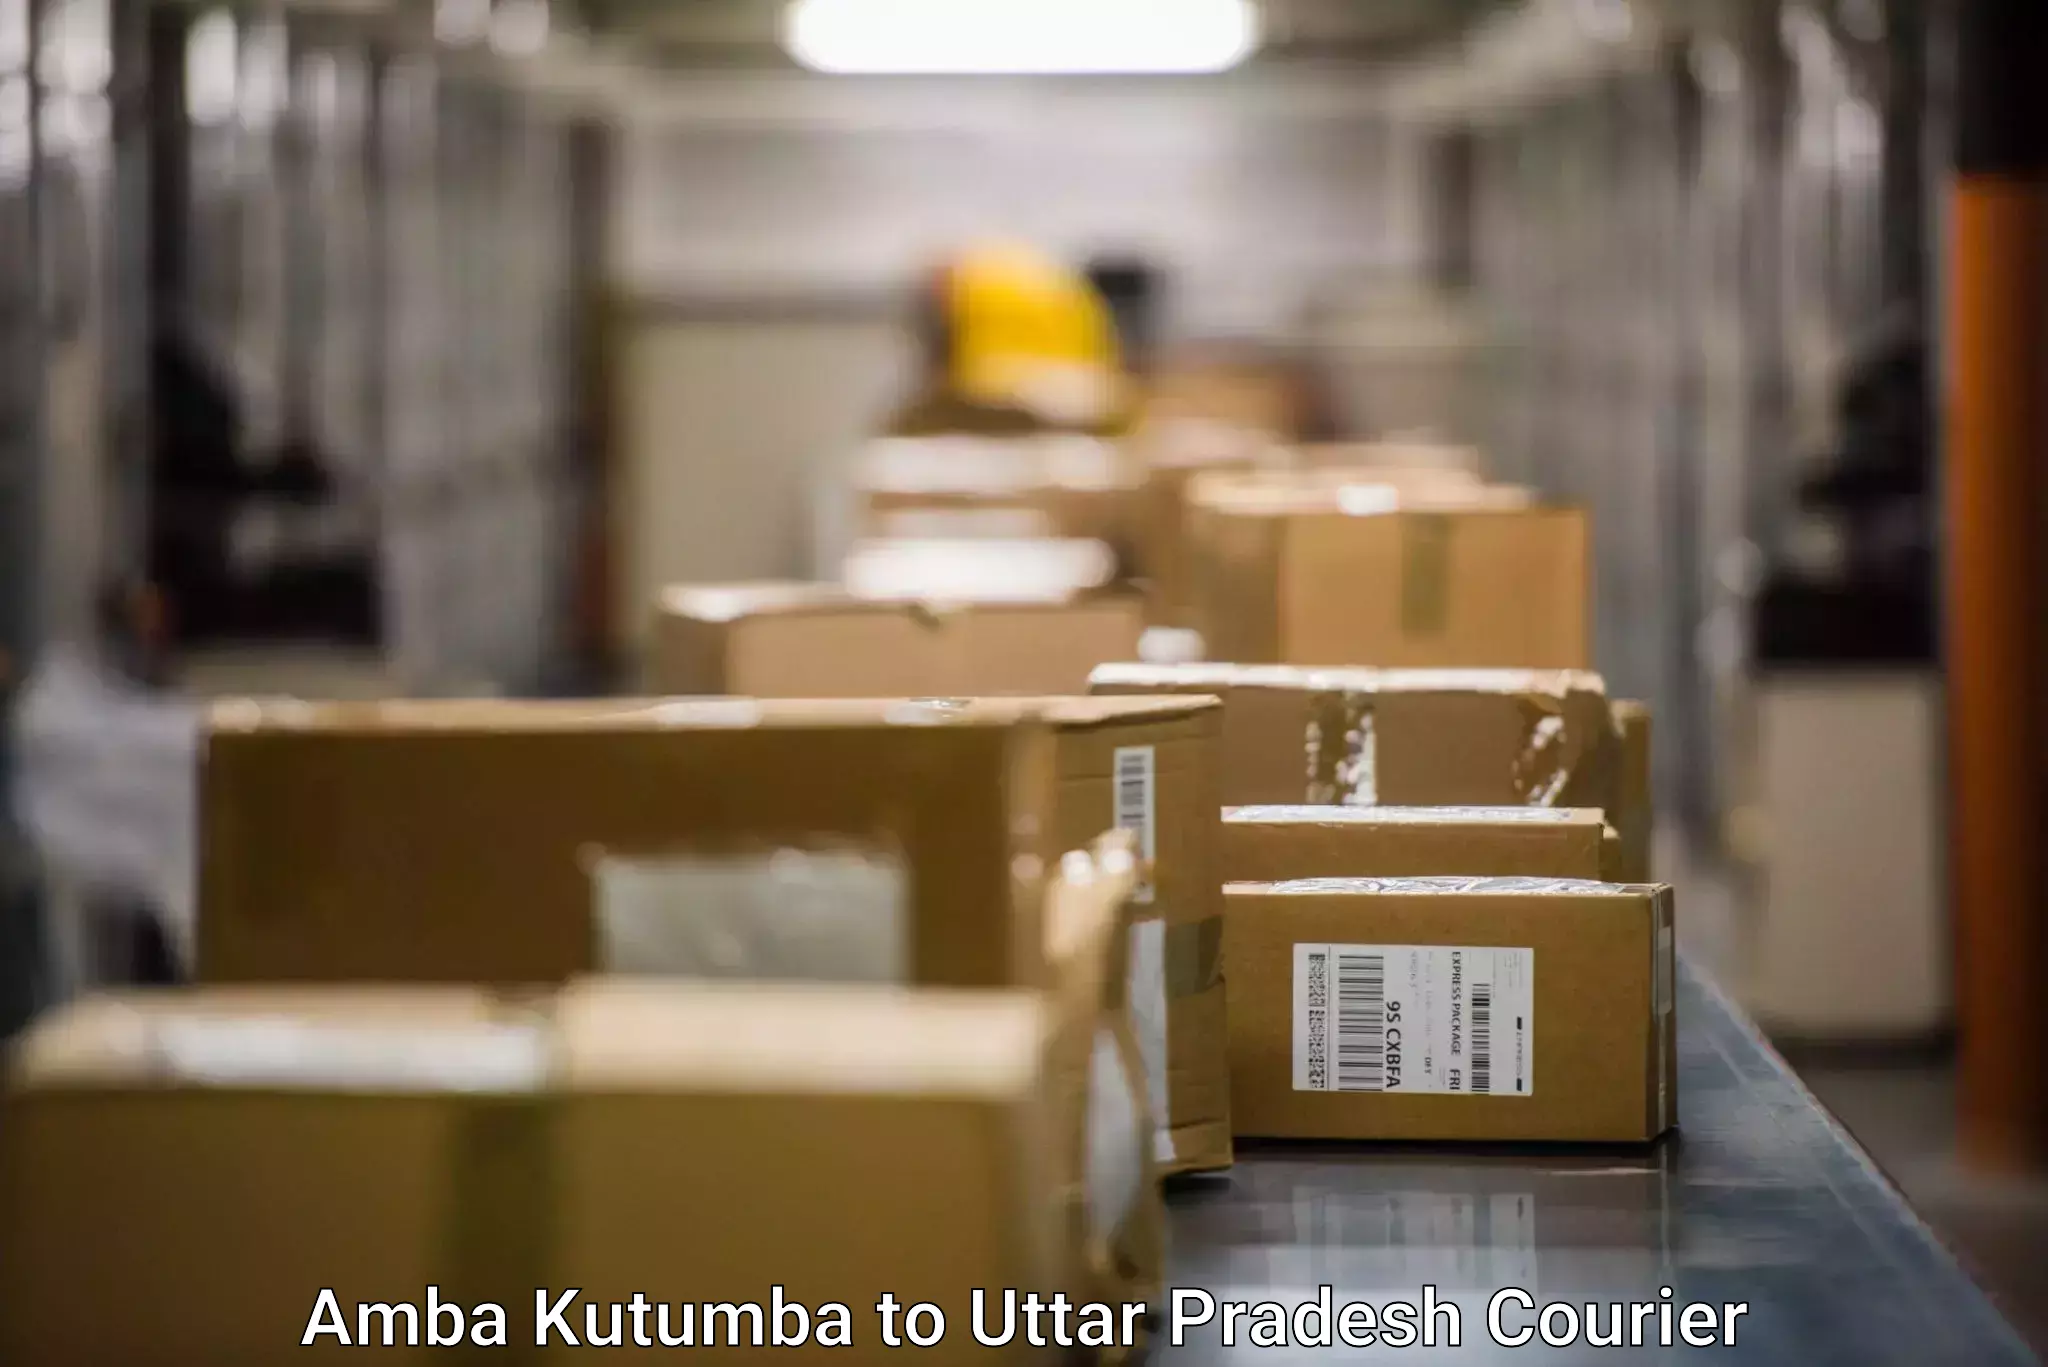 Smart courier technologies Amba Kutumba to Bidhuna